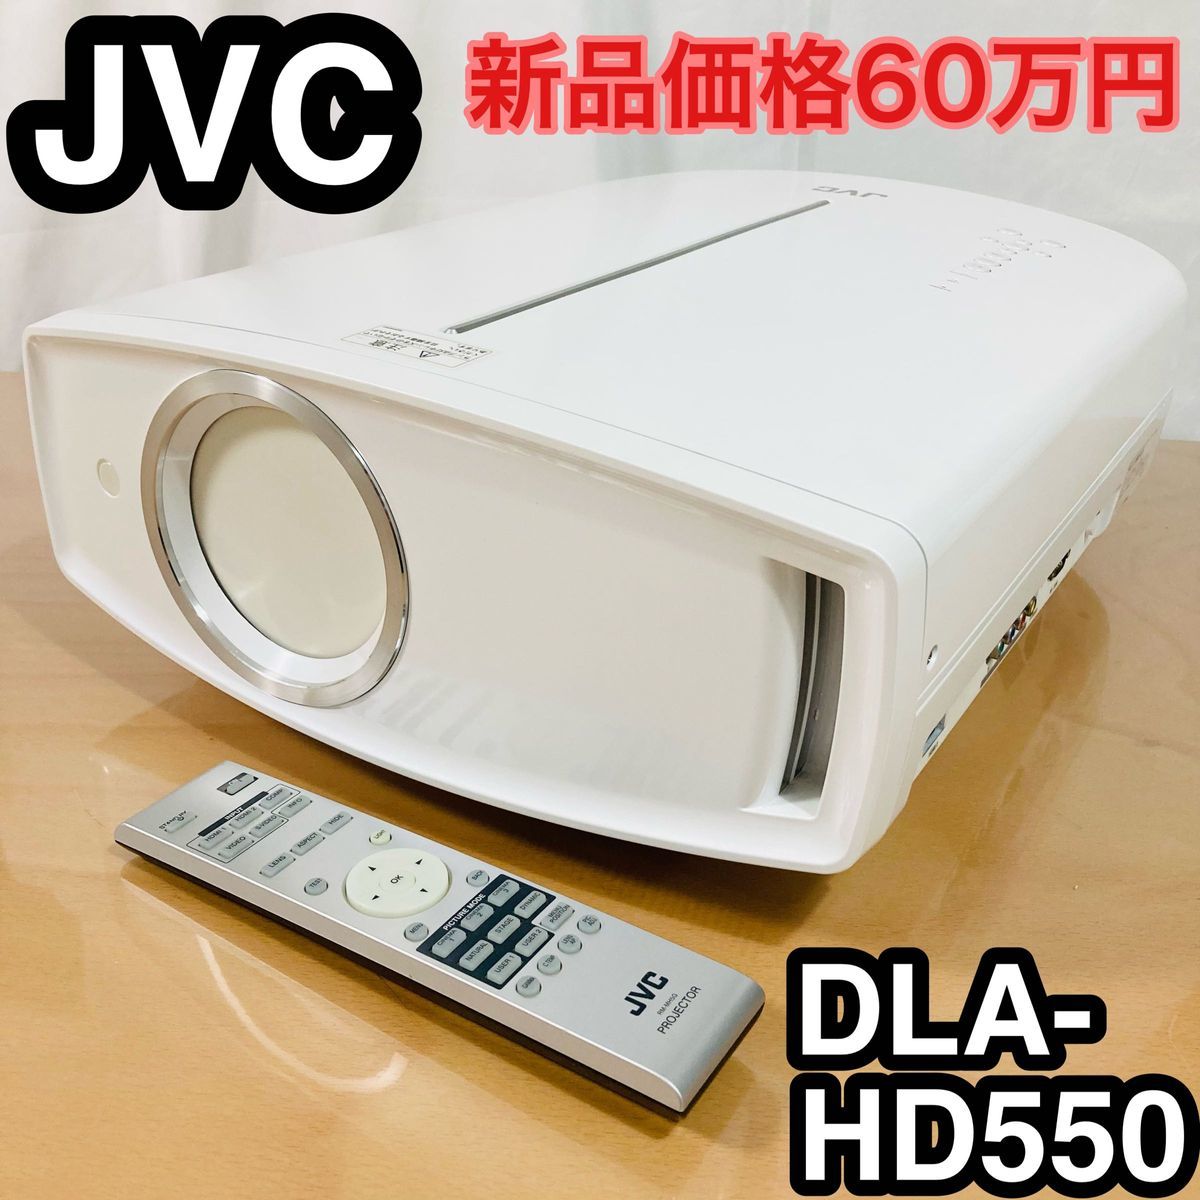 即日発送 ランプ使用150時間 JVC DLA-HD550 プロジェクター 新品価格60